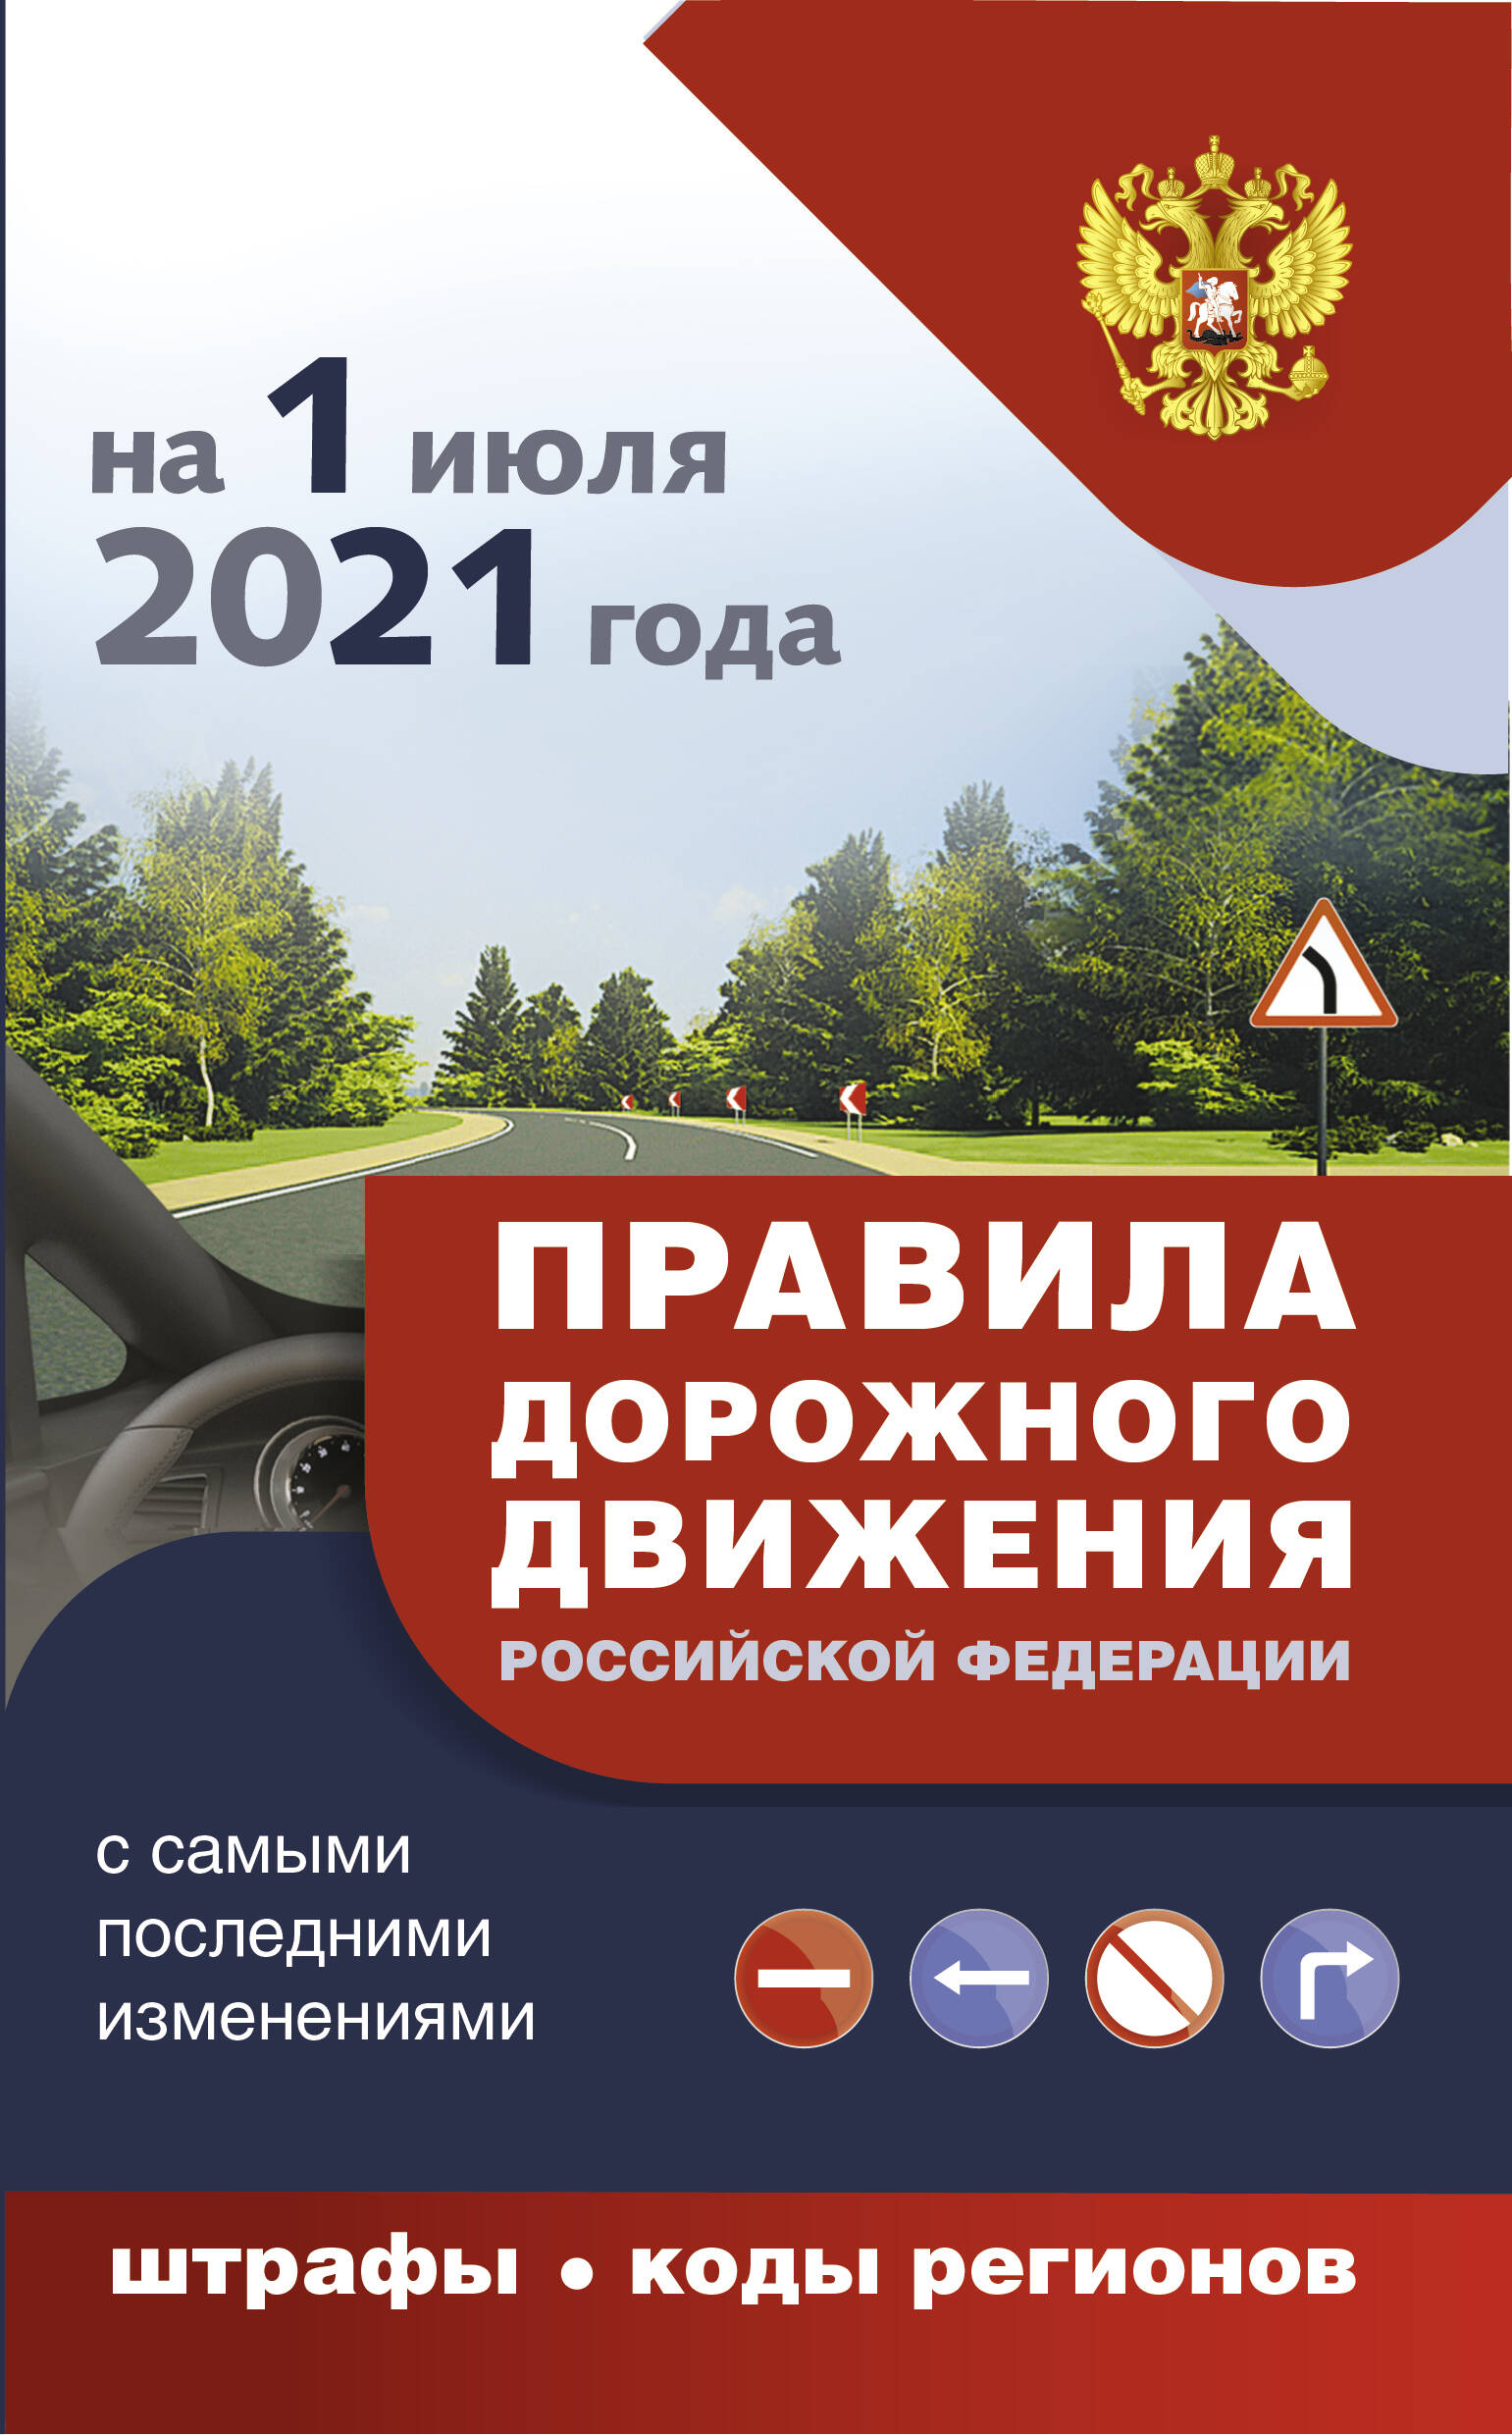  Правила дорожного движения с самыми последними дополнениями на 1 июля 2021 года : штрафы, коды регионов - страница 0